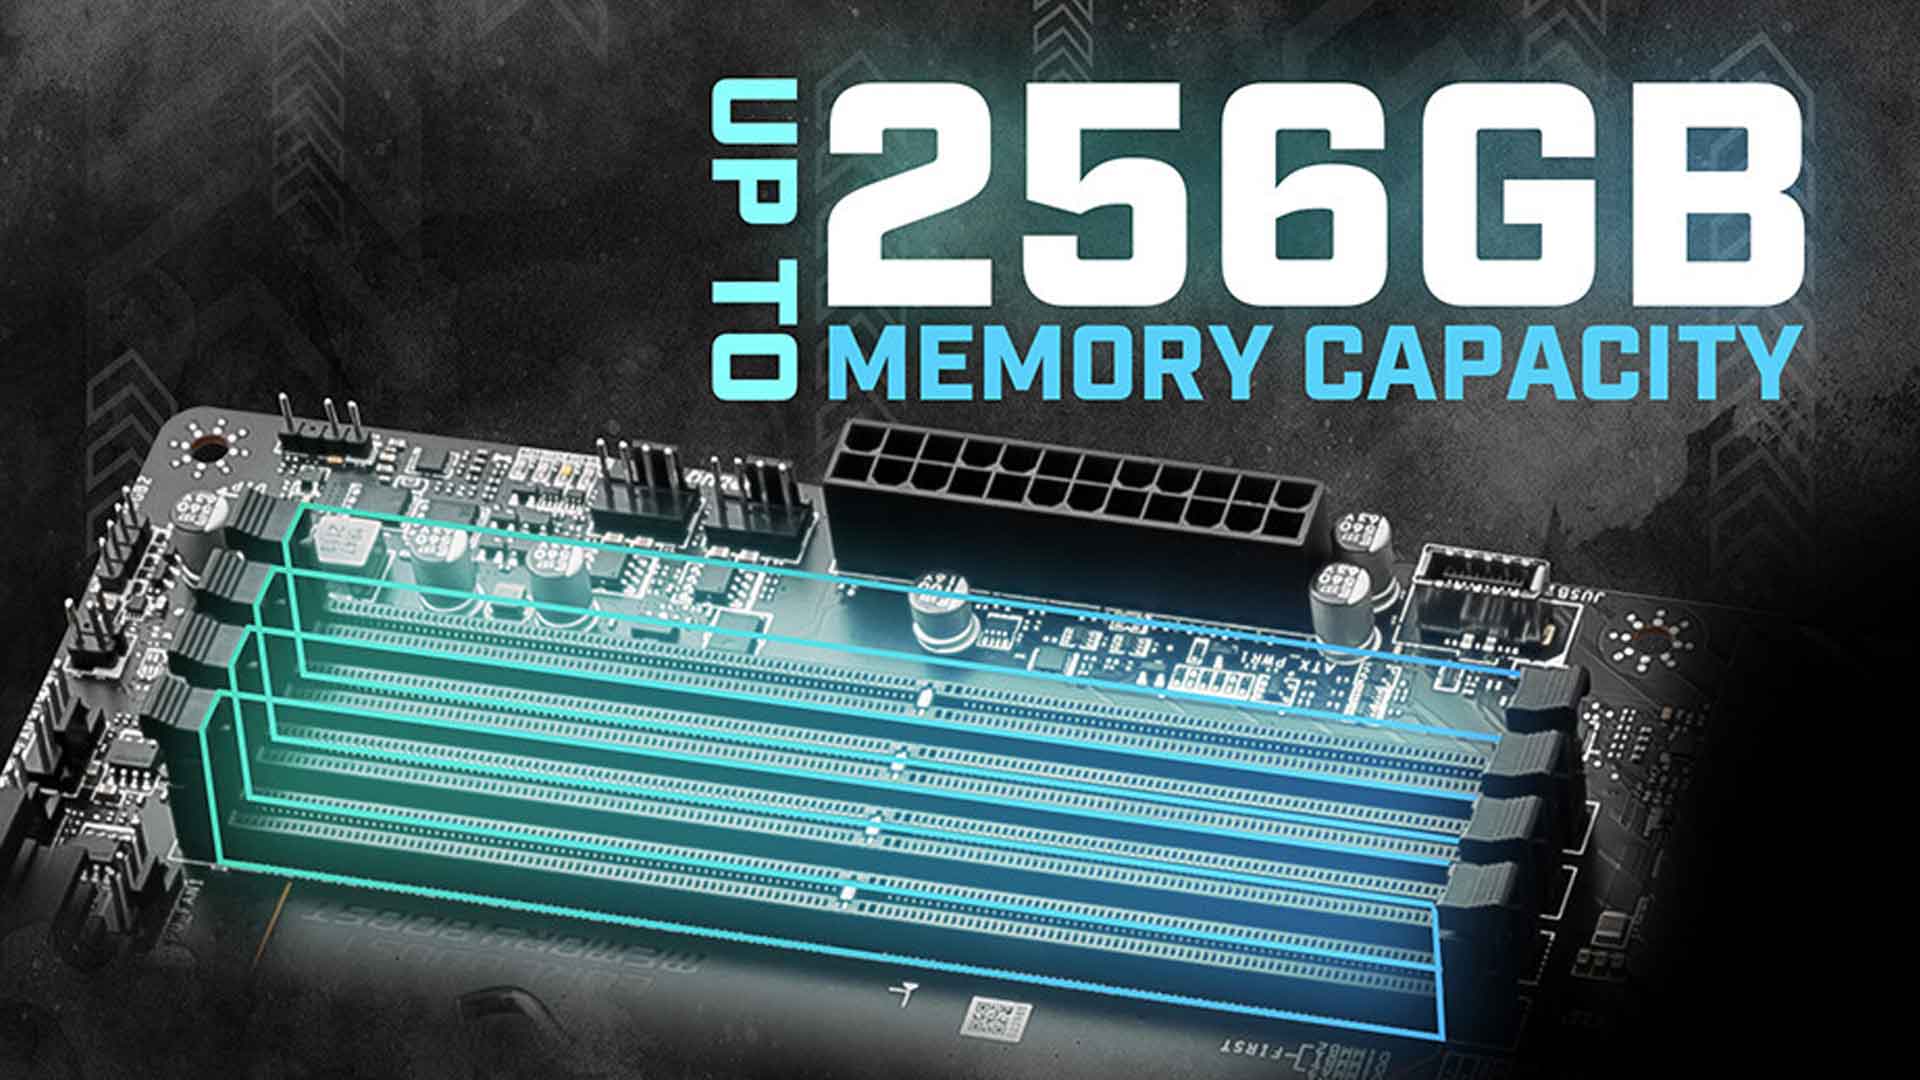 Carte mère, MSI annonce le support de 256 Go (4 x 64 Go) de DDR5